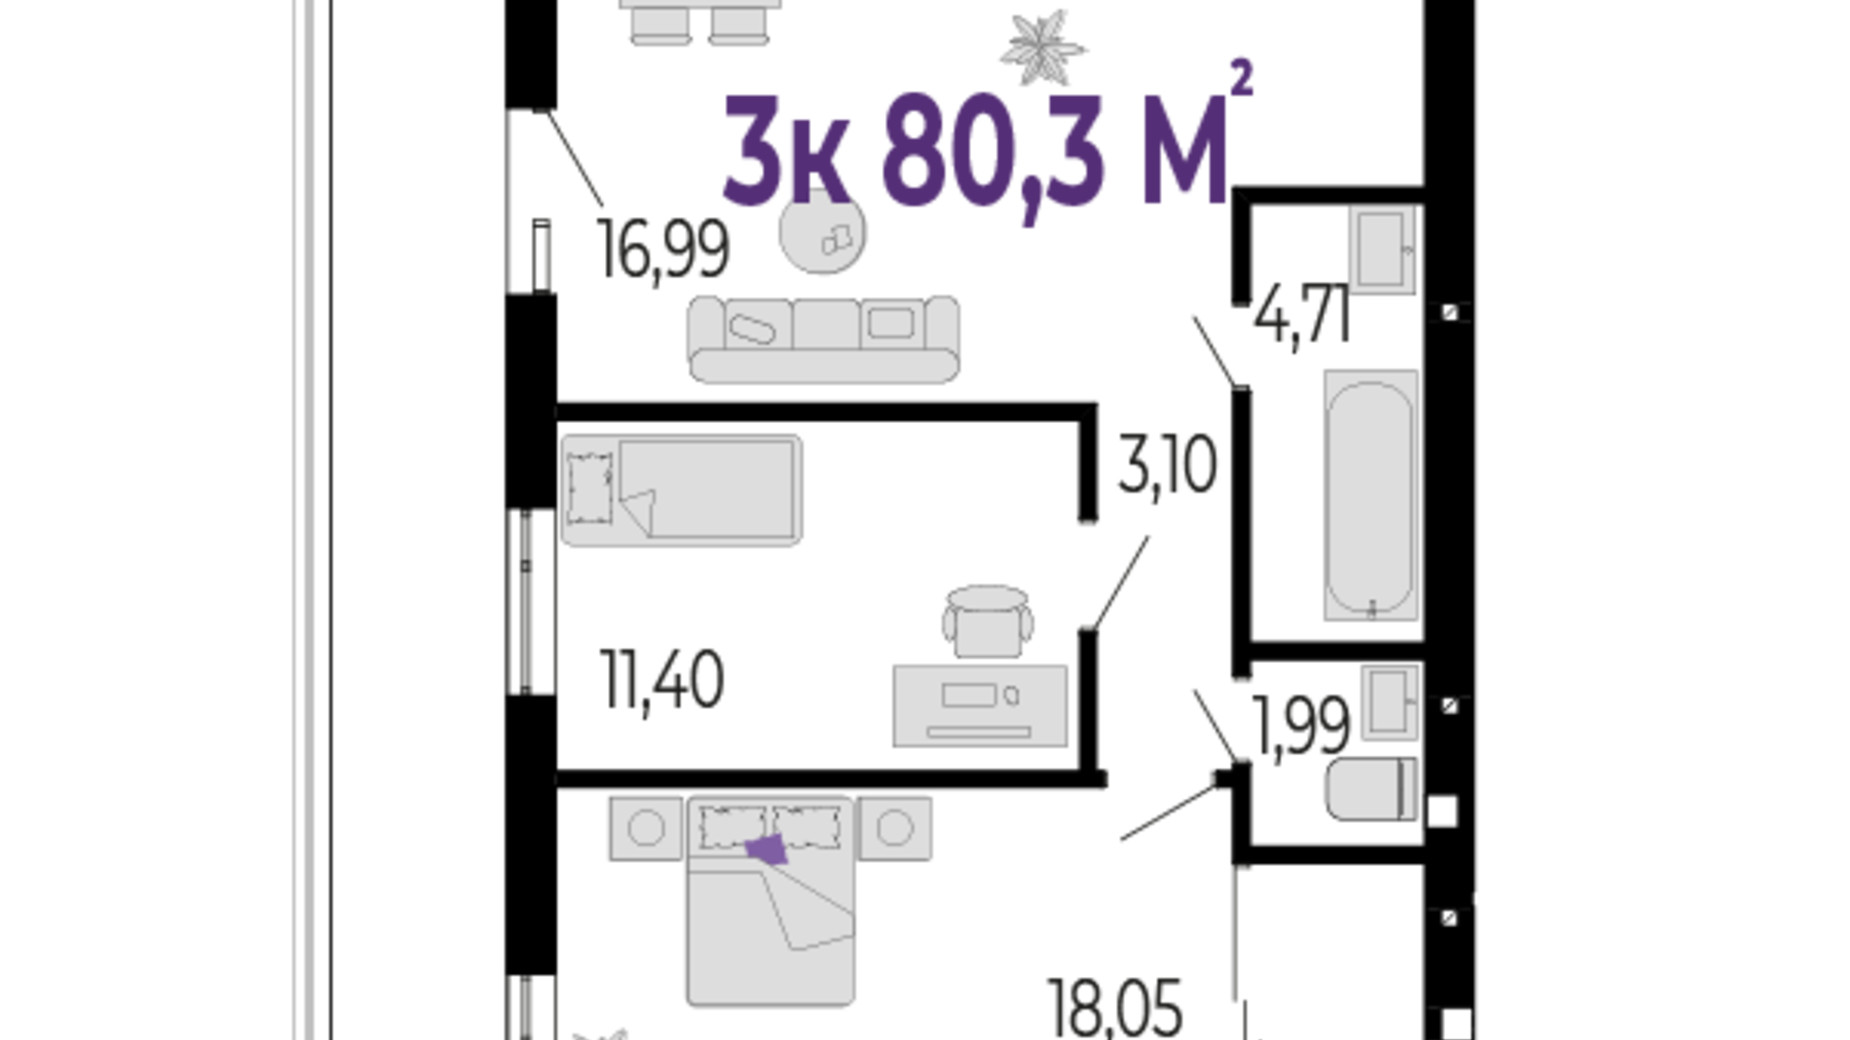 Планування 3-кімнатної квартири в ЖК Долішній 80.3 м², фото 589537